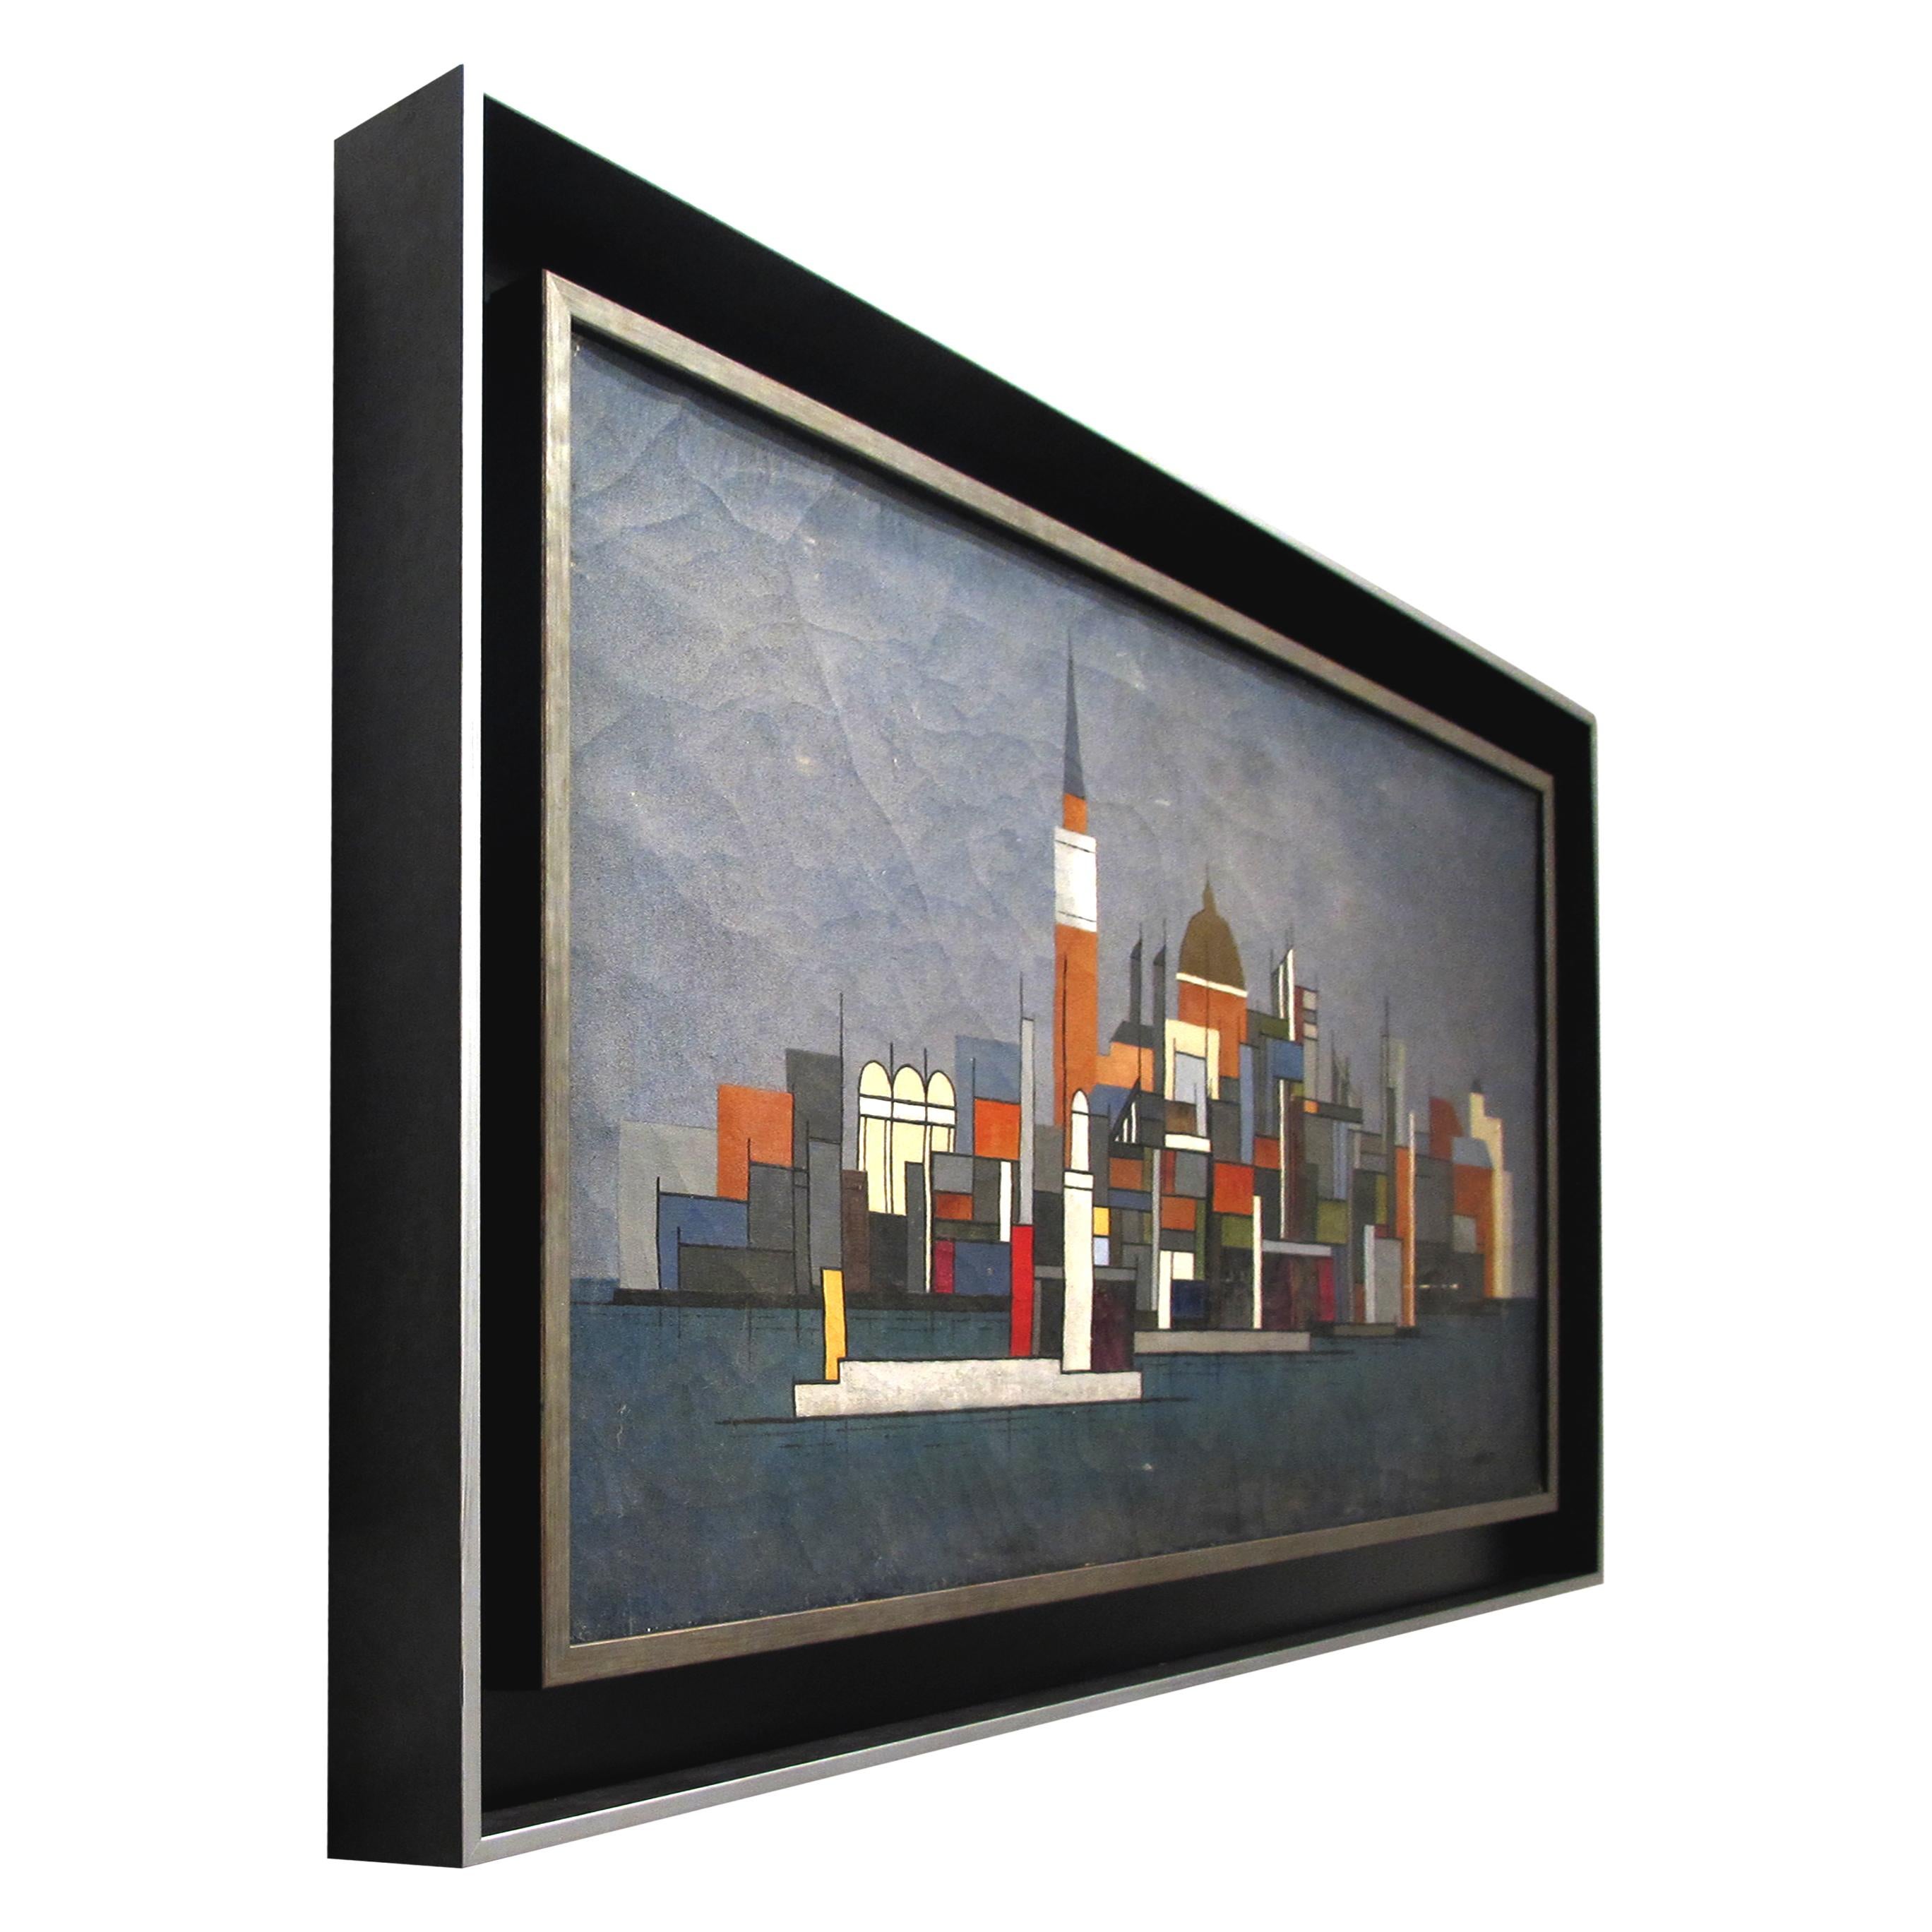 Elégante peinture à l'huile sur toile des années 1940 représentant une vue de paysage urbain depuis la mer de manière industrielle. Les lignes géométriques et les couleurs utilisées par l'artiste donnent une image chaleureuse et agréable. Le tableau